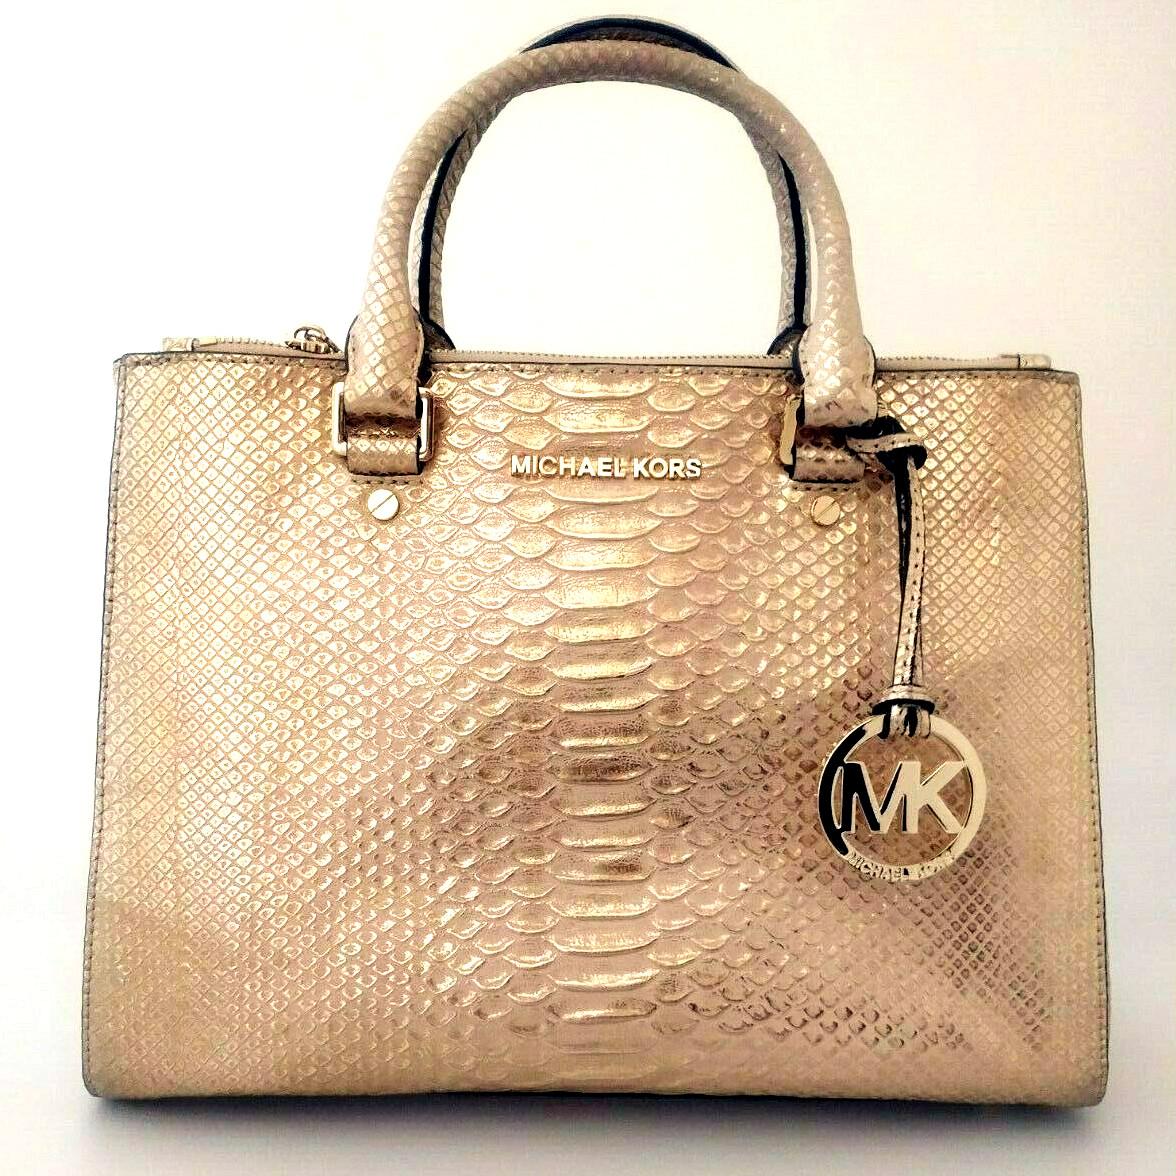 MICHAEL KORS Gold Leather Crossbody Shoulder Bag Pre Loved Purse | eBay